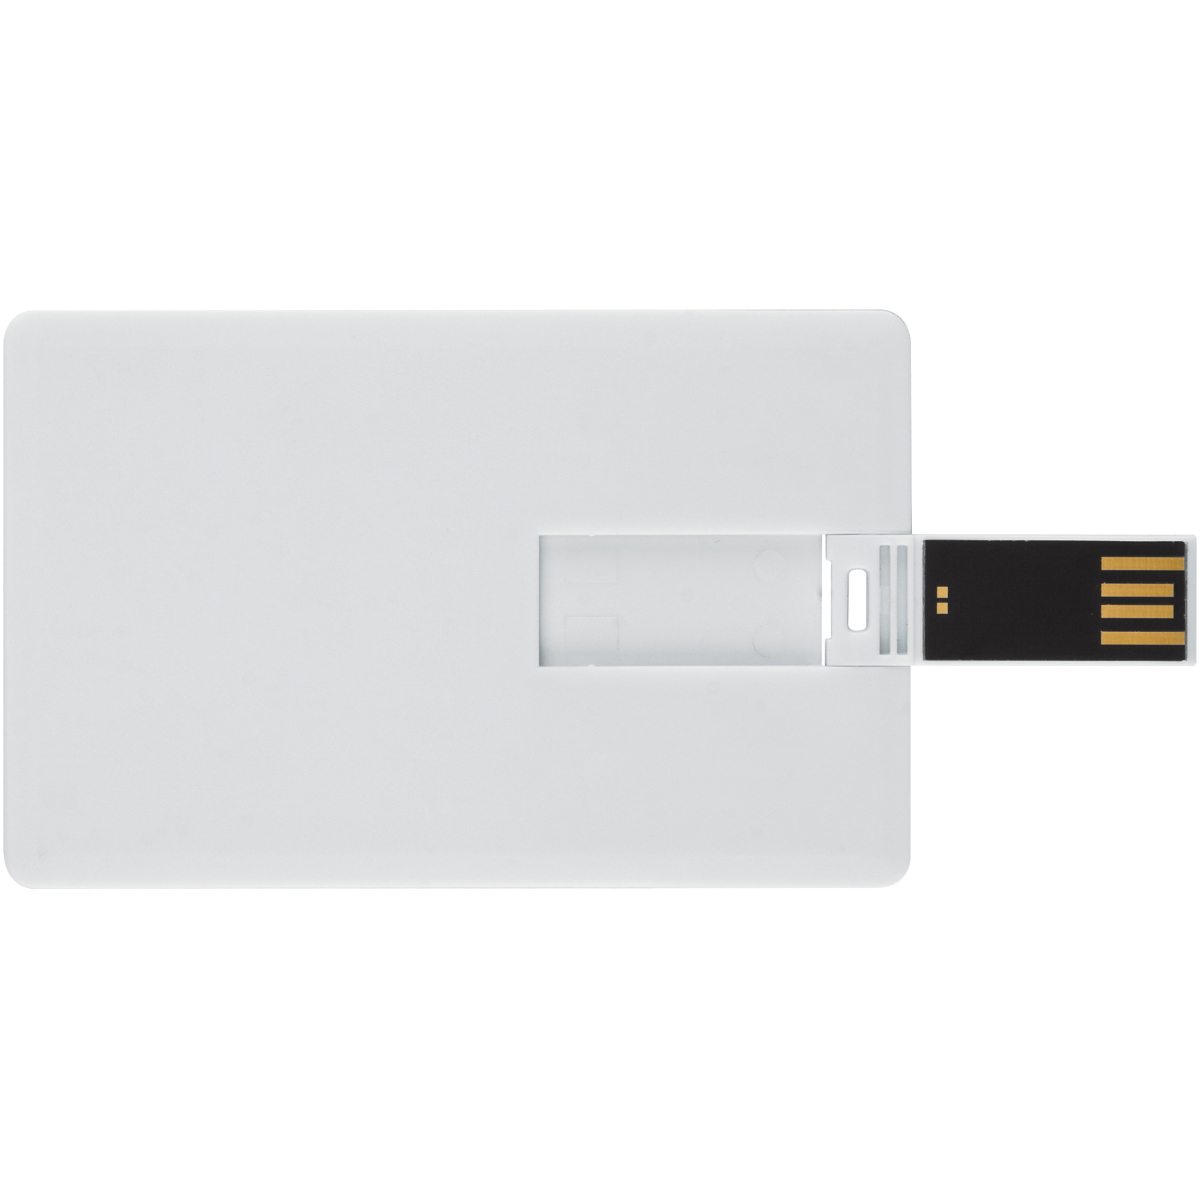 USB GERMANY (Weiss, Kreditkarte 4 ® GB) USB-Stick